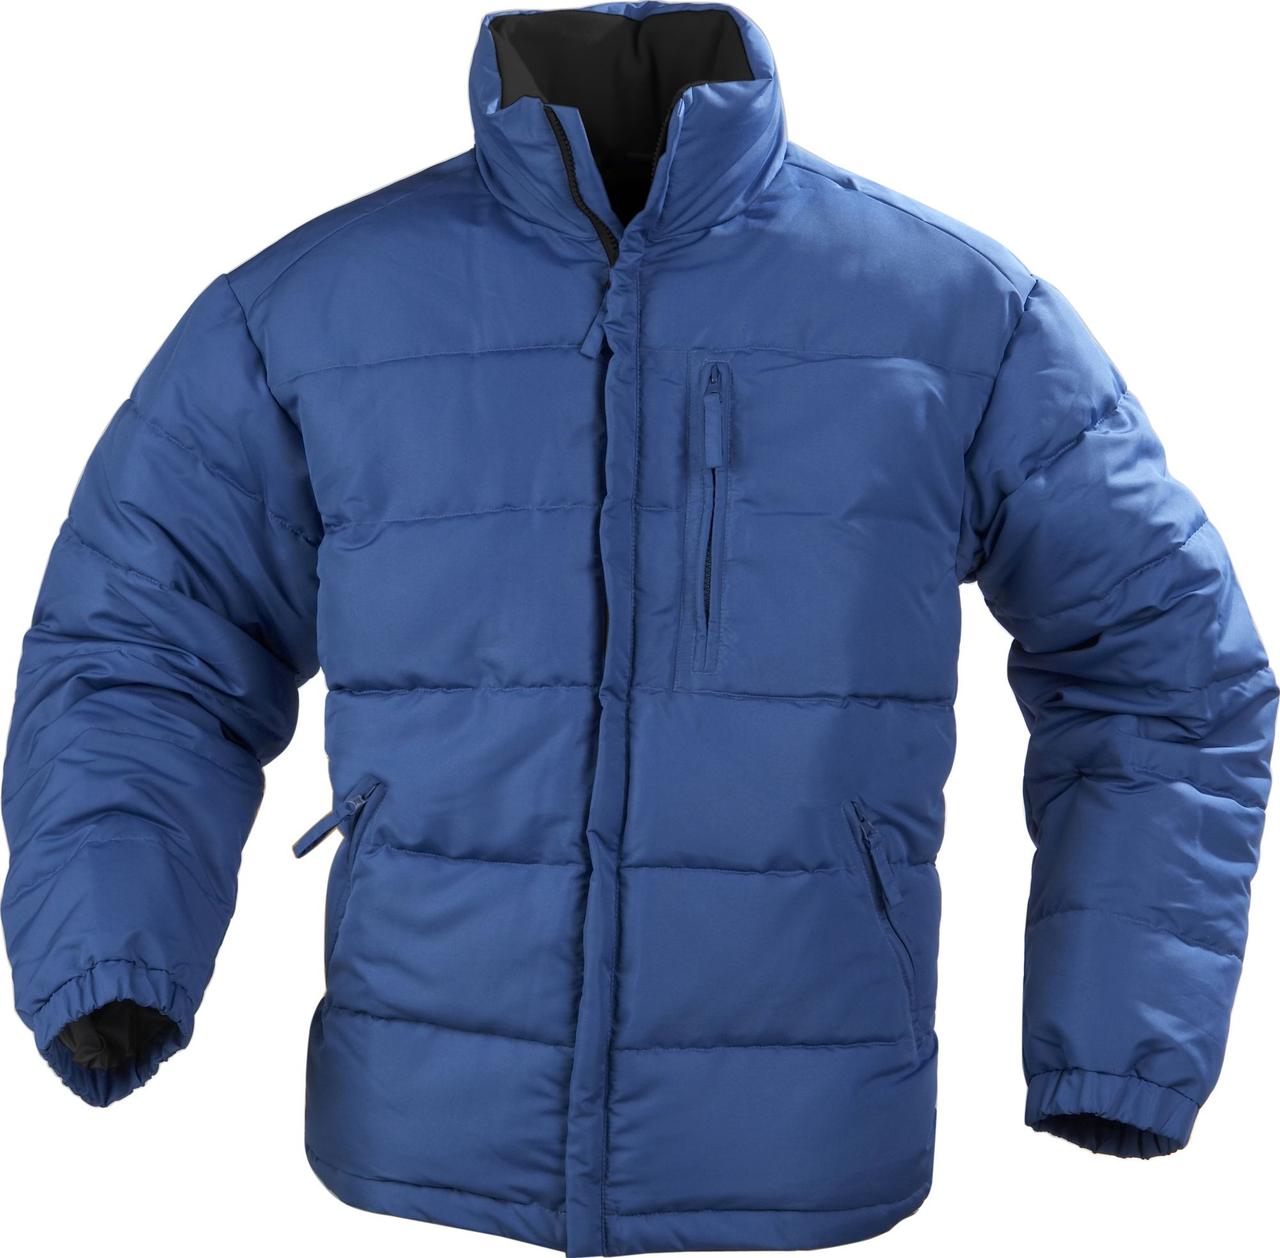 Куртки мужские зимние синие. Куртка мужская. Синяя куртка. Синяя куртка мужская. Куртка мужская зимняя.